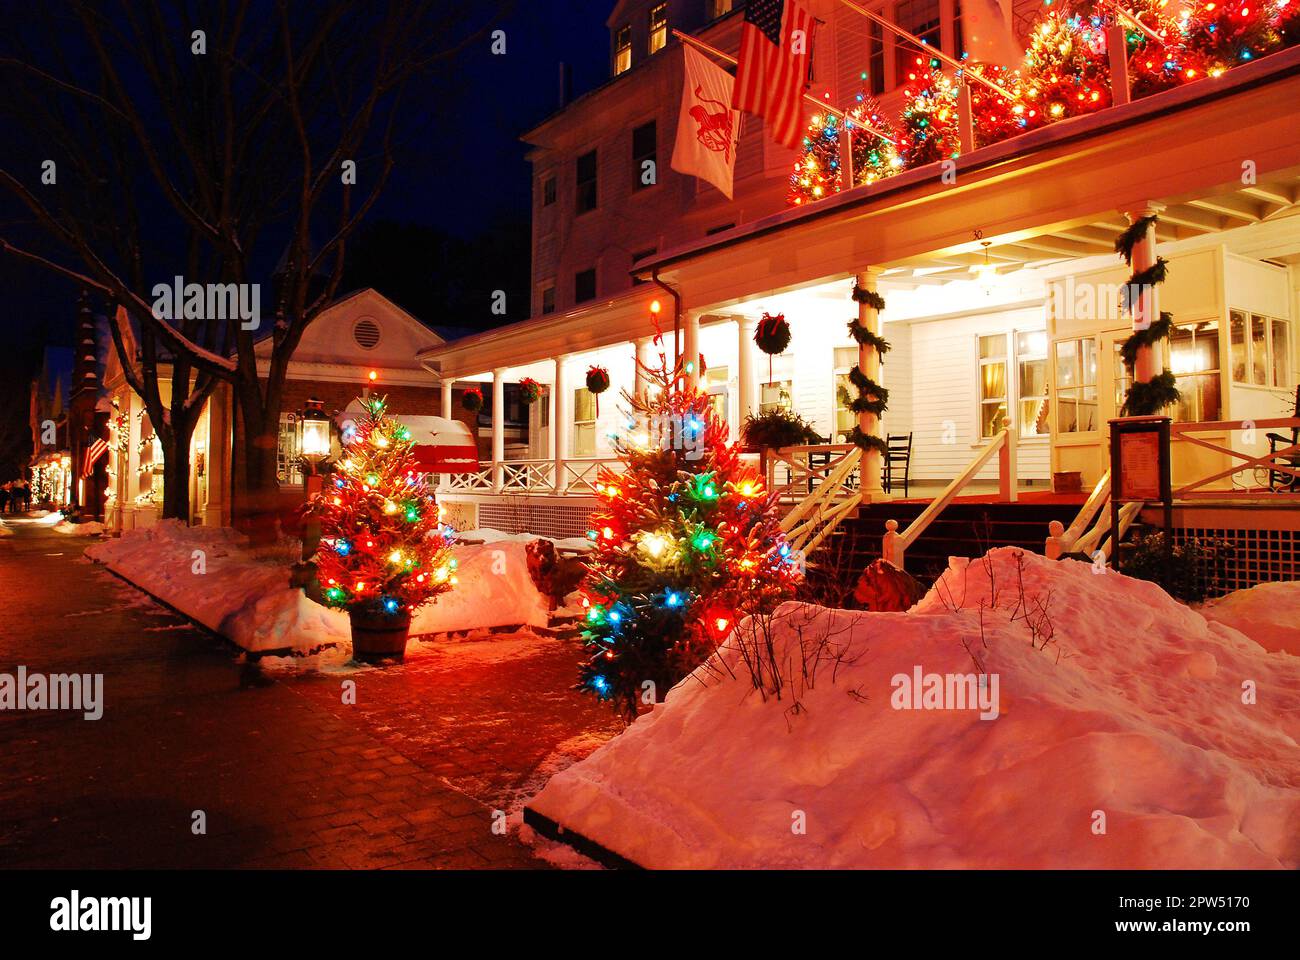 Des lumières de Noël décorent une auberge de campagne lors d'une nuit d'hiver enneigée en Nouvelle-Angleterre Banque D'Images